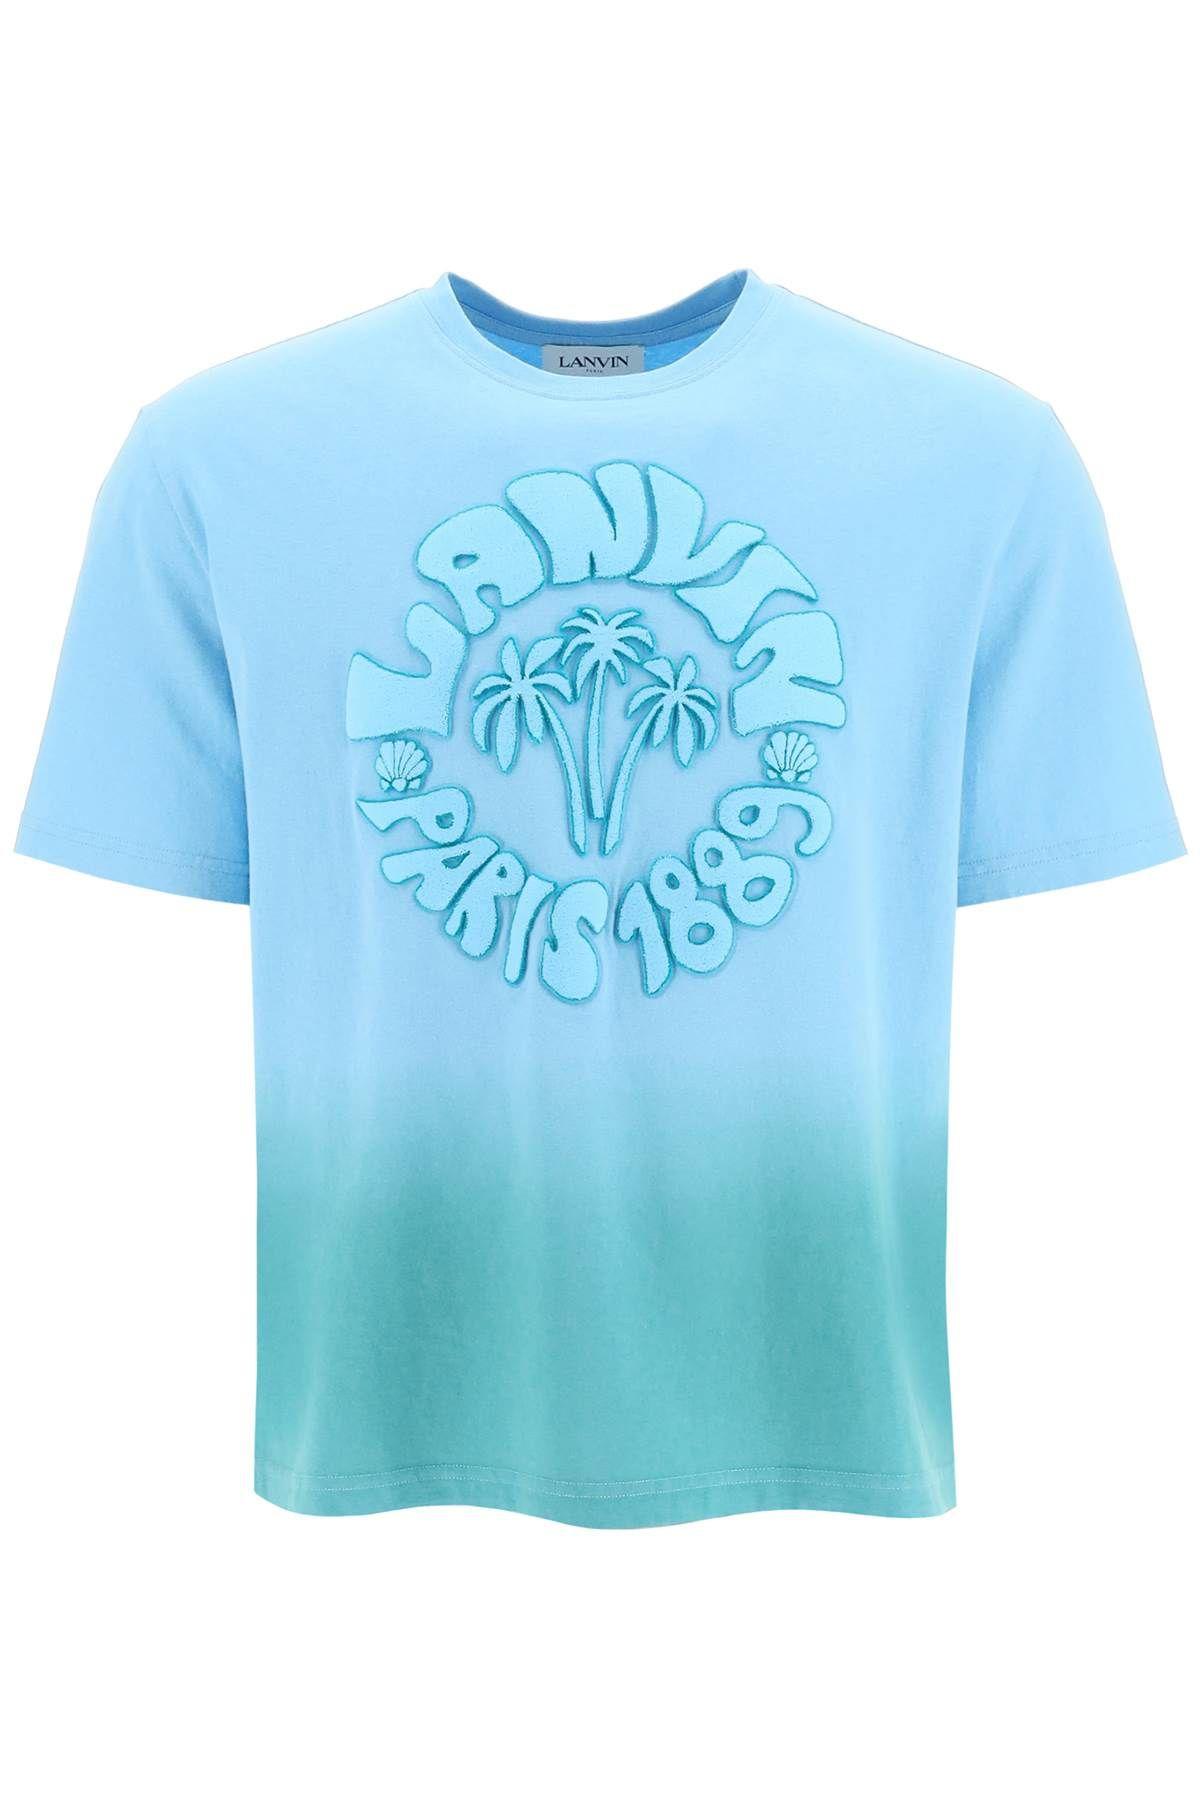 Lanvin wave Logo Tie-dye T-shirt